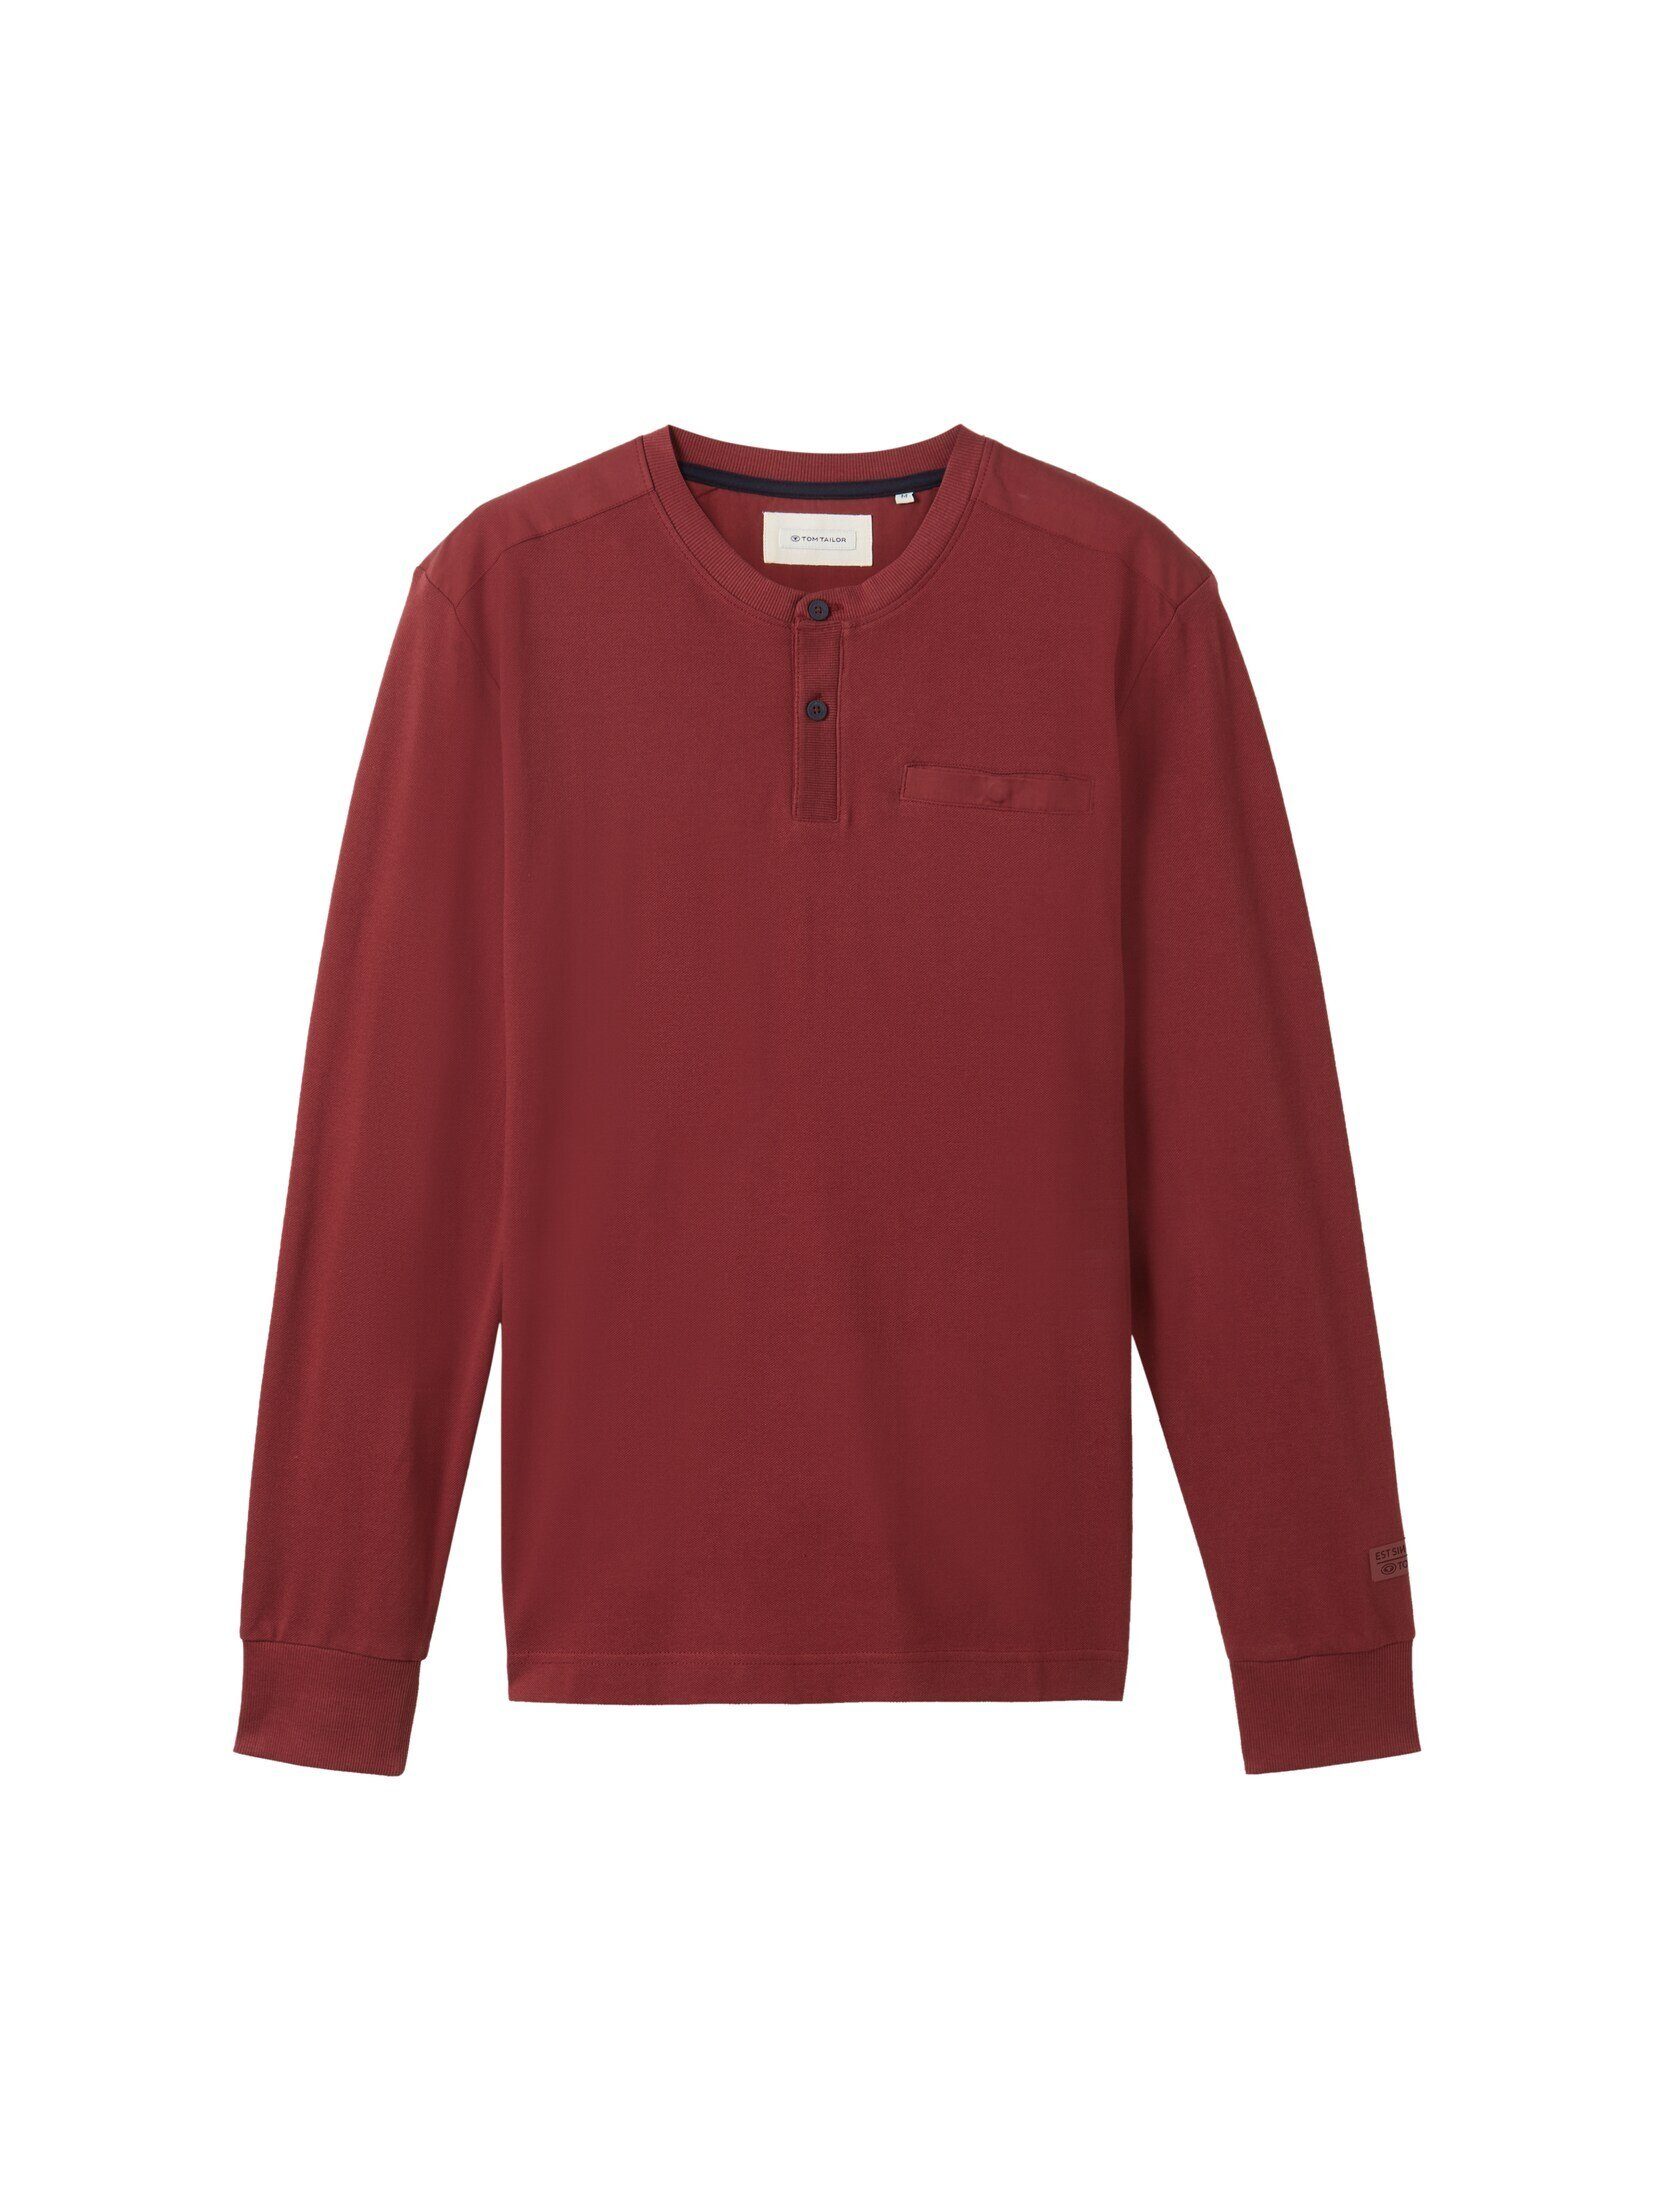 TOM TAILOR T-Shirt Langarmshirt red mit Struktur bordeaux Piqué burned